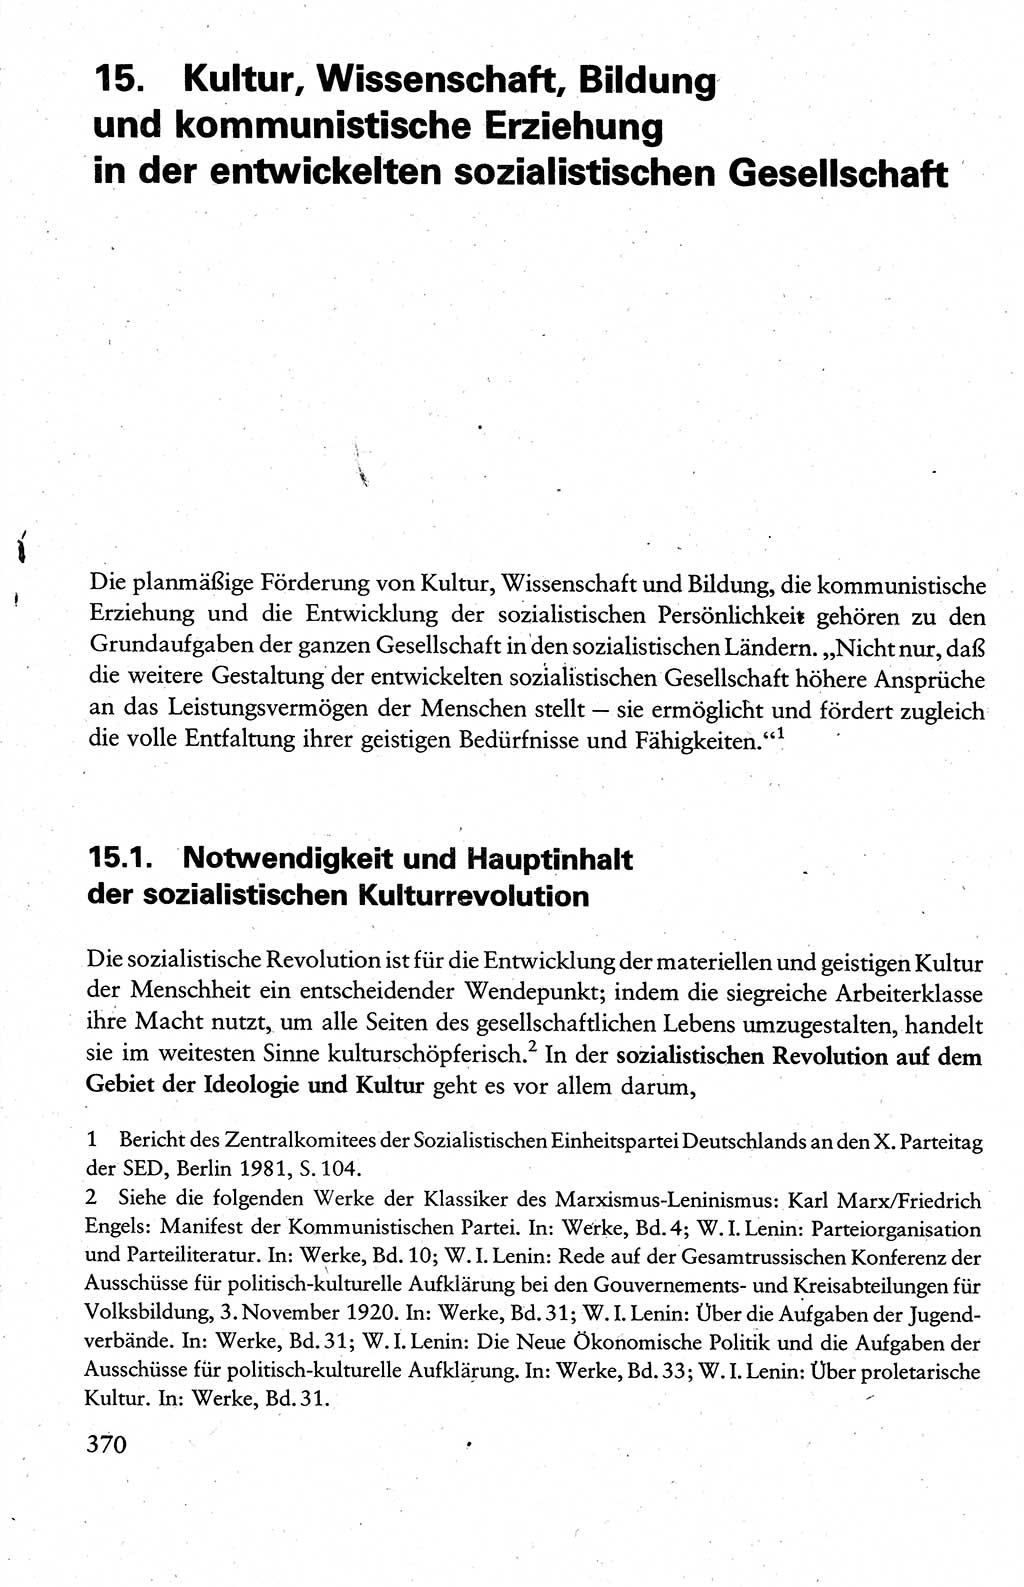 Wissenschaftlicher Kommunismus [Deutsche Demokratische Republik (DDR)], Lehrbuch für das marxistisch-leninistische Grundlagenstudium 1983, Seite 370 (Wiss. Komm. DDR Lb. 1983, S. 370)